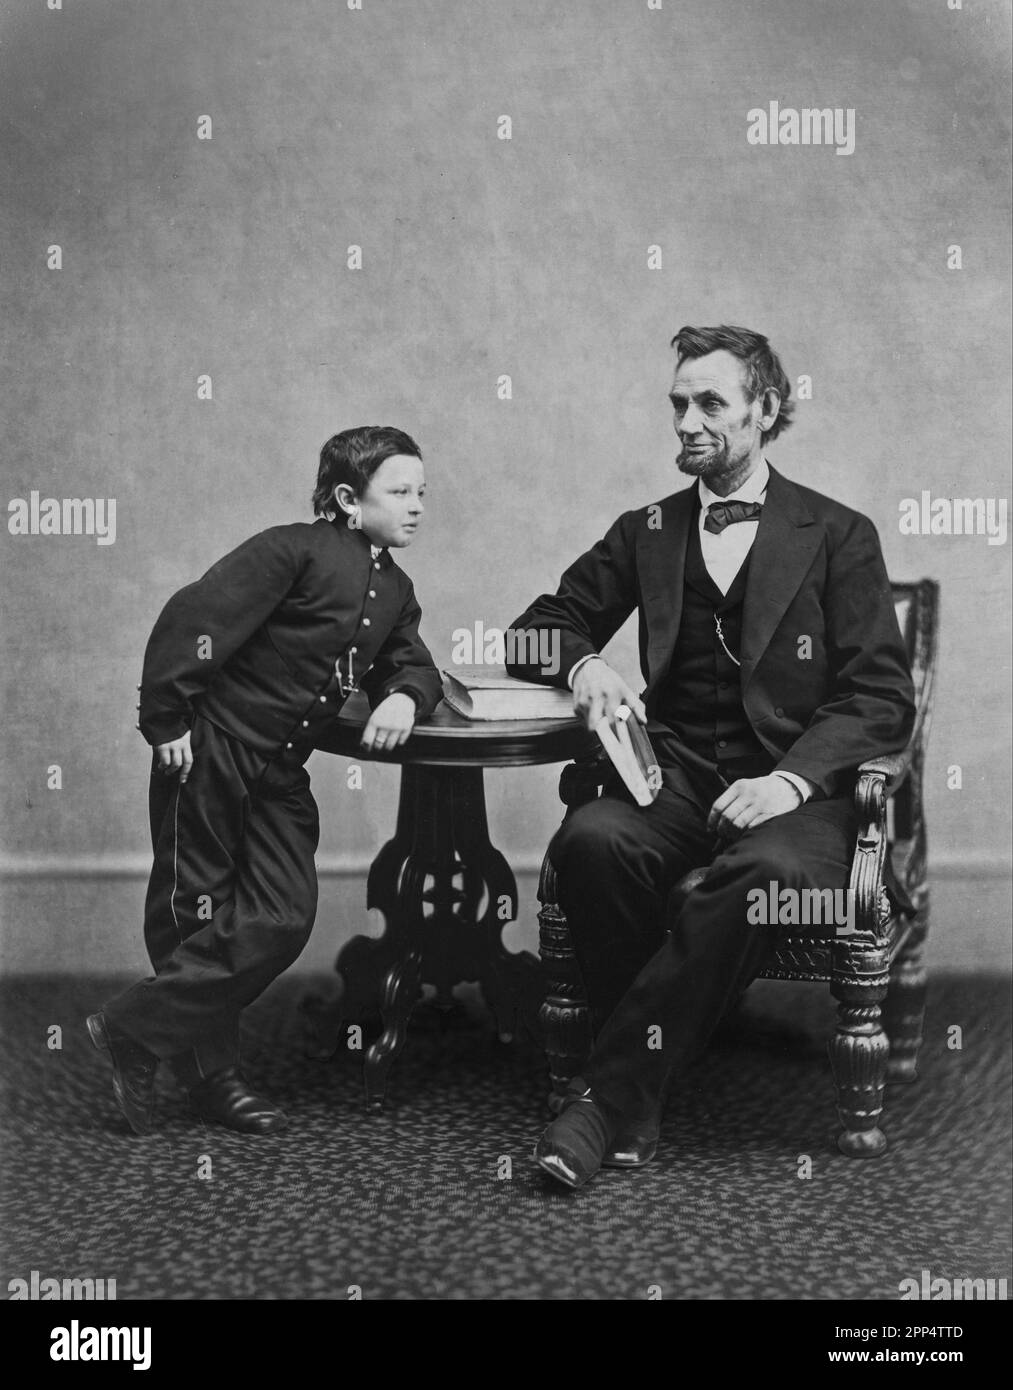 Abraham Lincoln, assis et tenant un livre, avec son fils TAD (Thomas) appuyé sur une table. 5th févr. 1865. Photographe: Alexander Gardner Banque D'Images